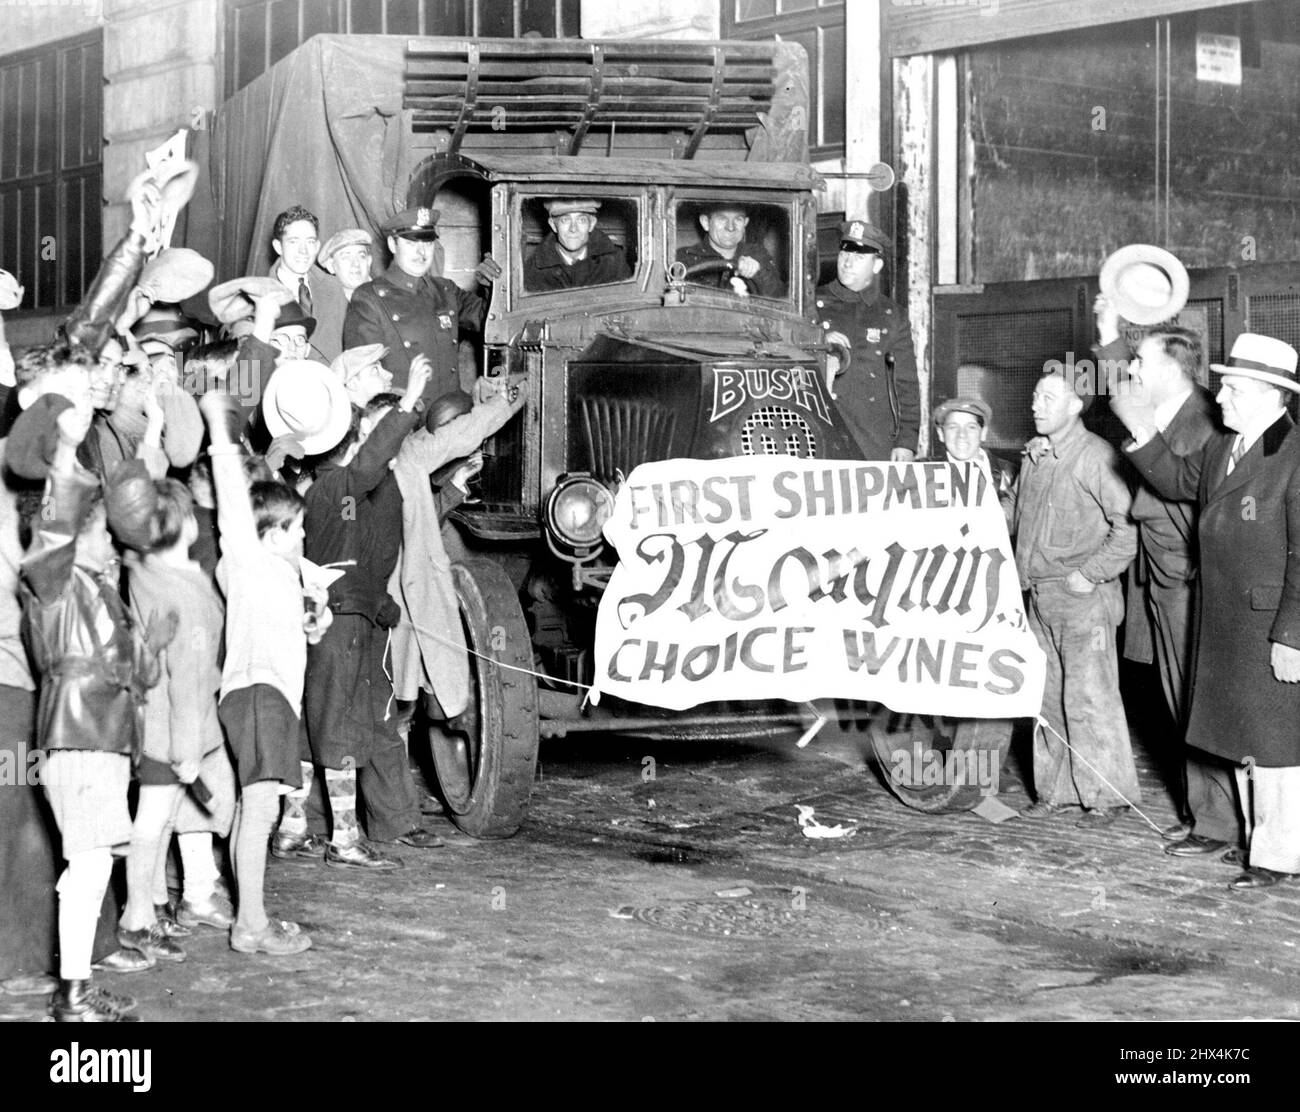 Waren bereit für den Aufruf Sobald die Aufhebung ratifiziert wurde, begannen die Großhandelshäuser in New York eifrig damit, jenen, die ihren Durst stillen wollten, „Waren“ zu liefern. Das Bild zeigt die erste Lieferung aus einem Weinlager für verschiedene Hotels. 09. Januar 1934. Stockfoto